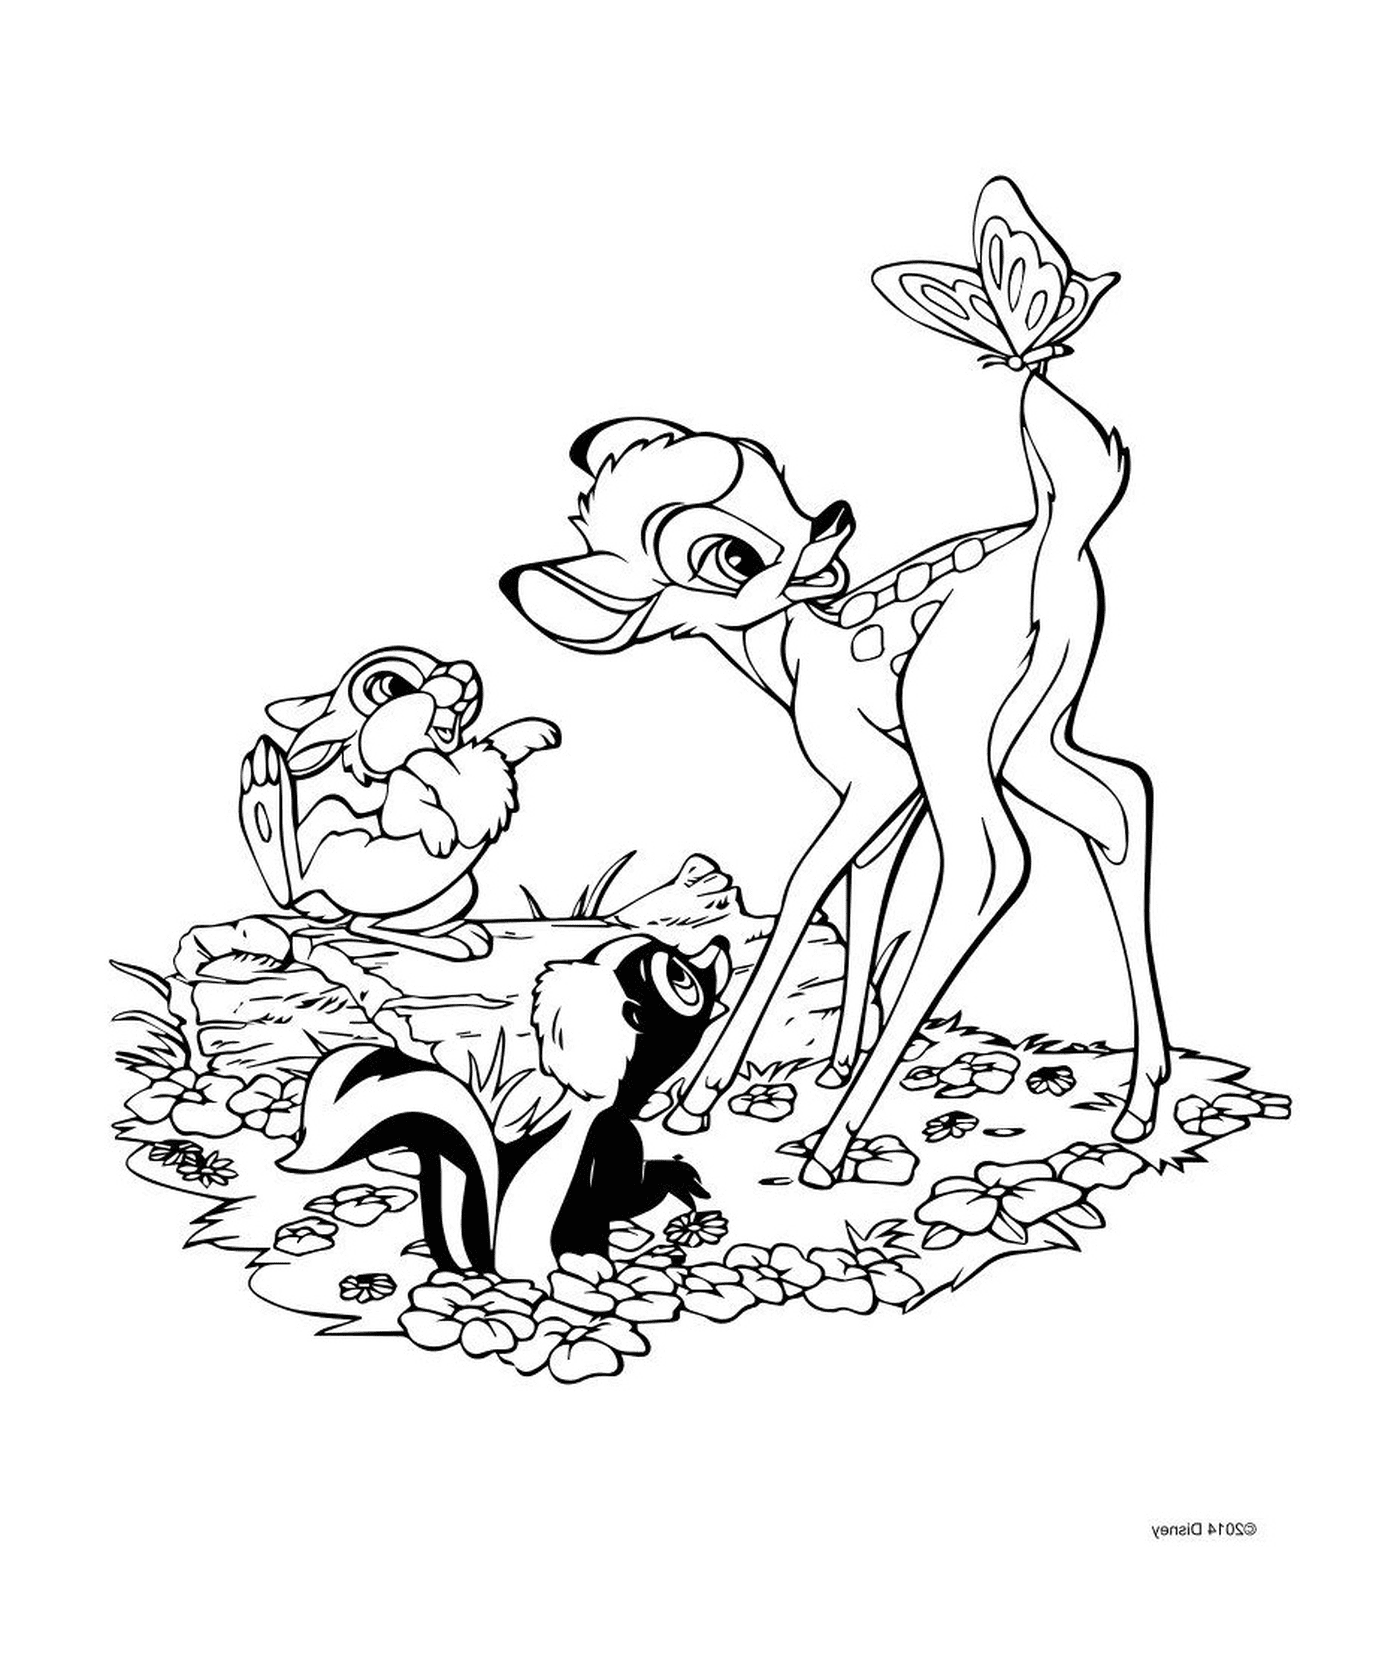  Bambi e Panpan, uma amizade desajeitada 